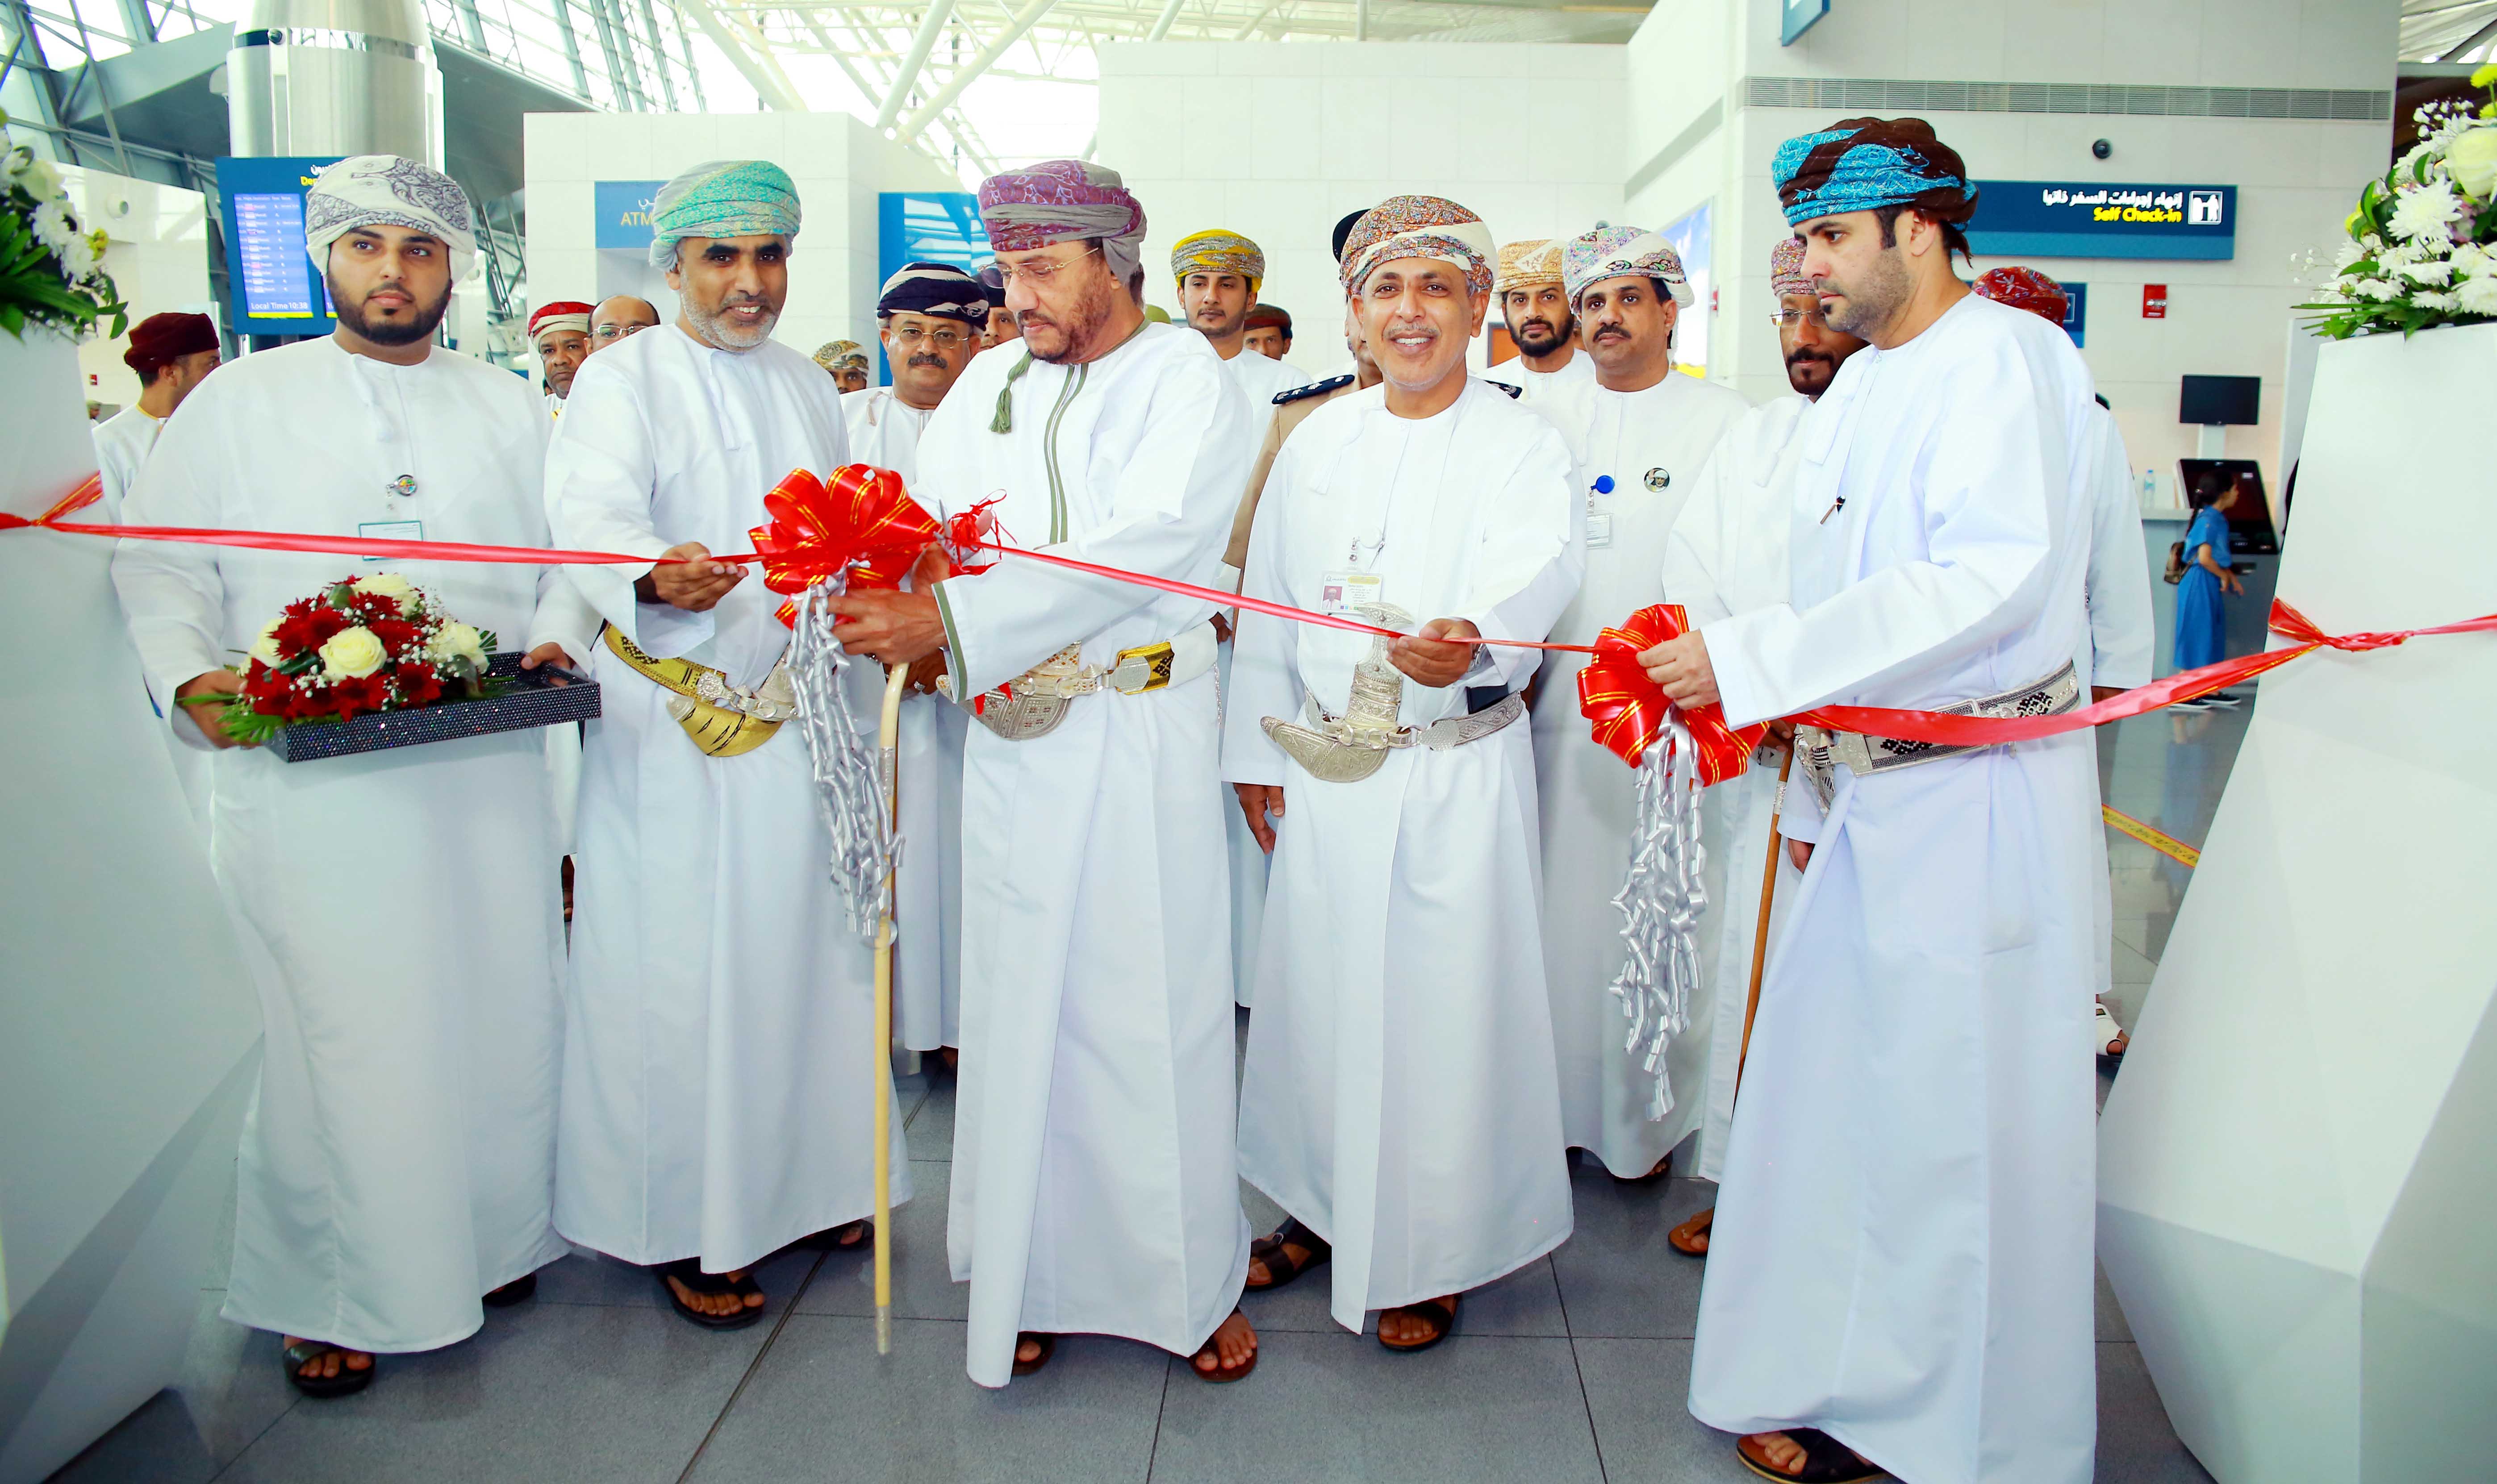 Oman Airports Hosts “Oman and the Sea” Exhibition at Salalah Airport